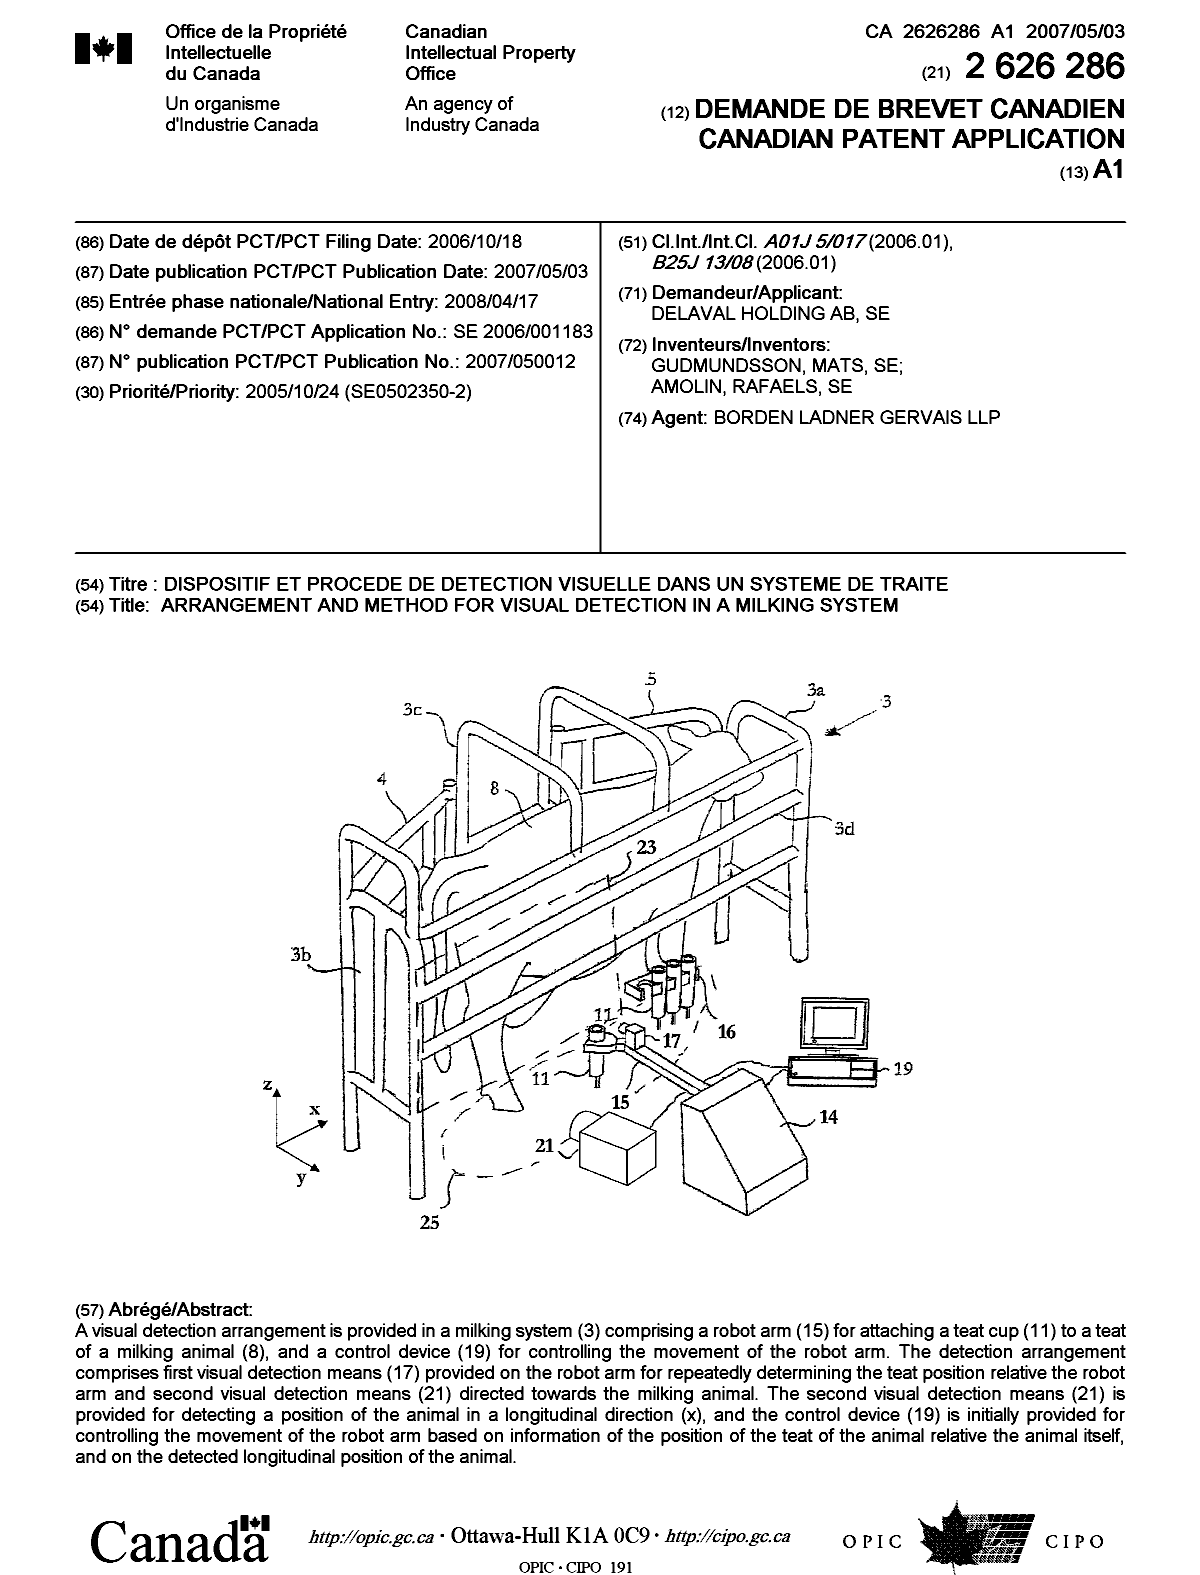 Document de brevet canadien 2626286. Page couverture 20080728. Image 1 de 1